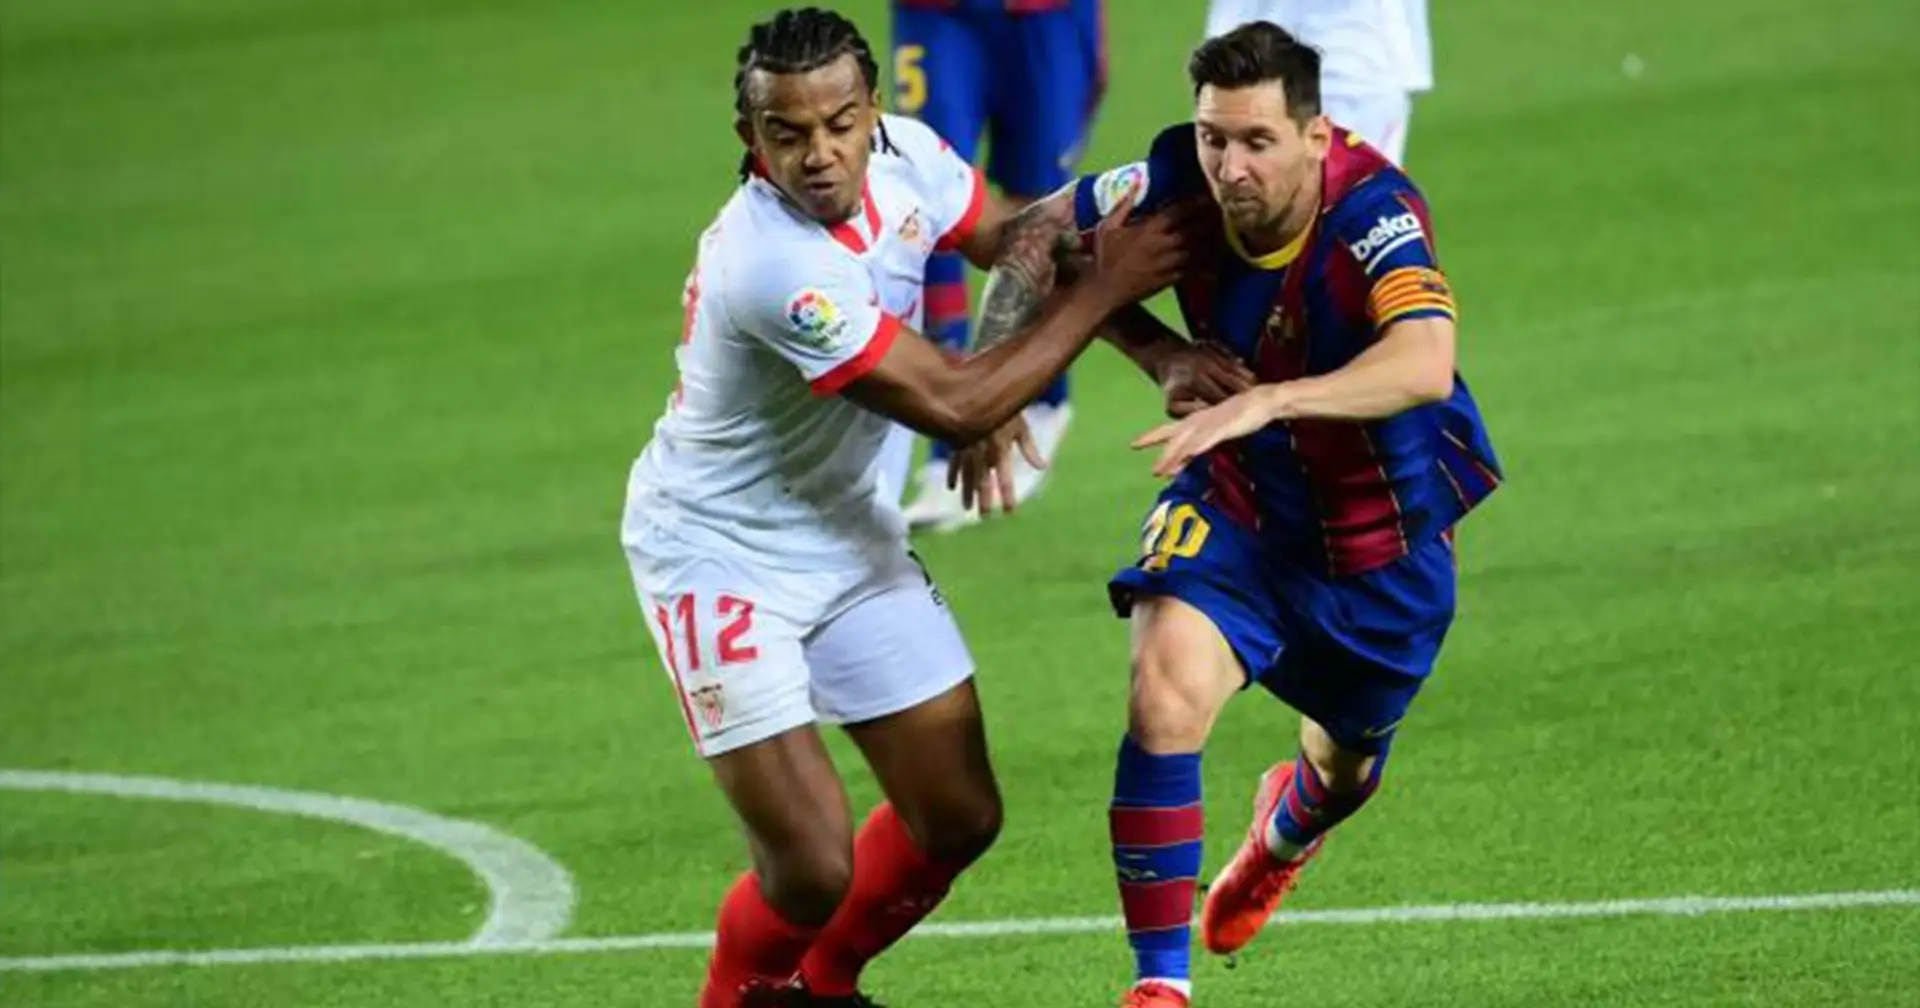 Koundé, futurible del Madrid, elogiado por Lopetegui por su mentalidad